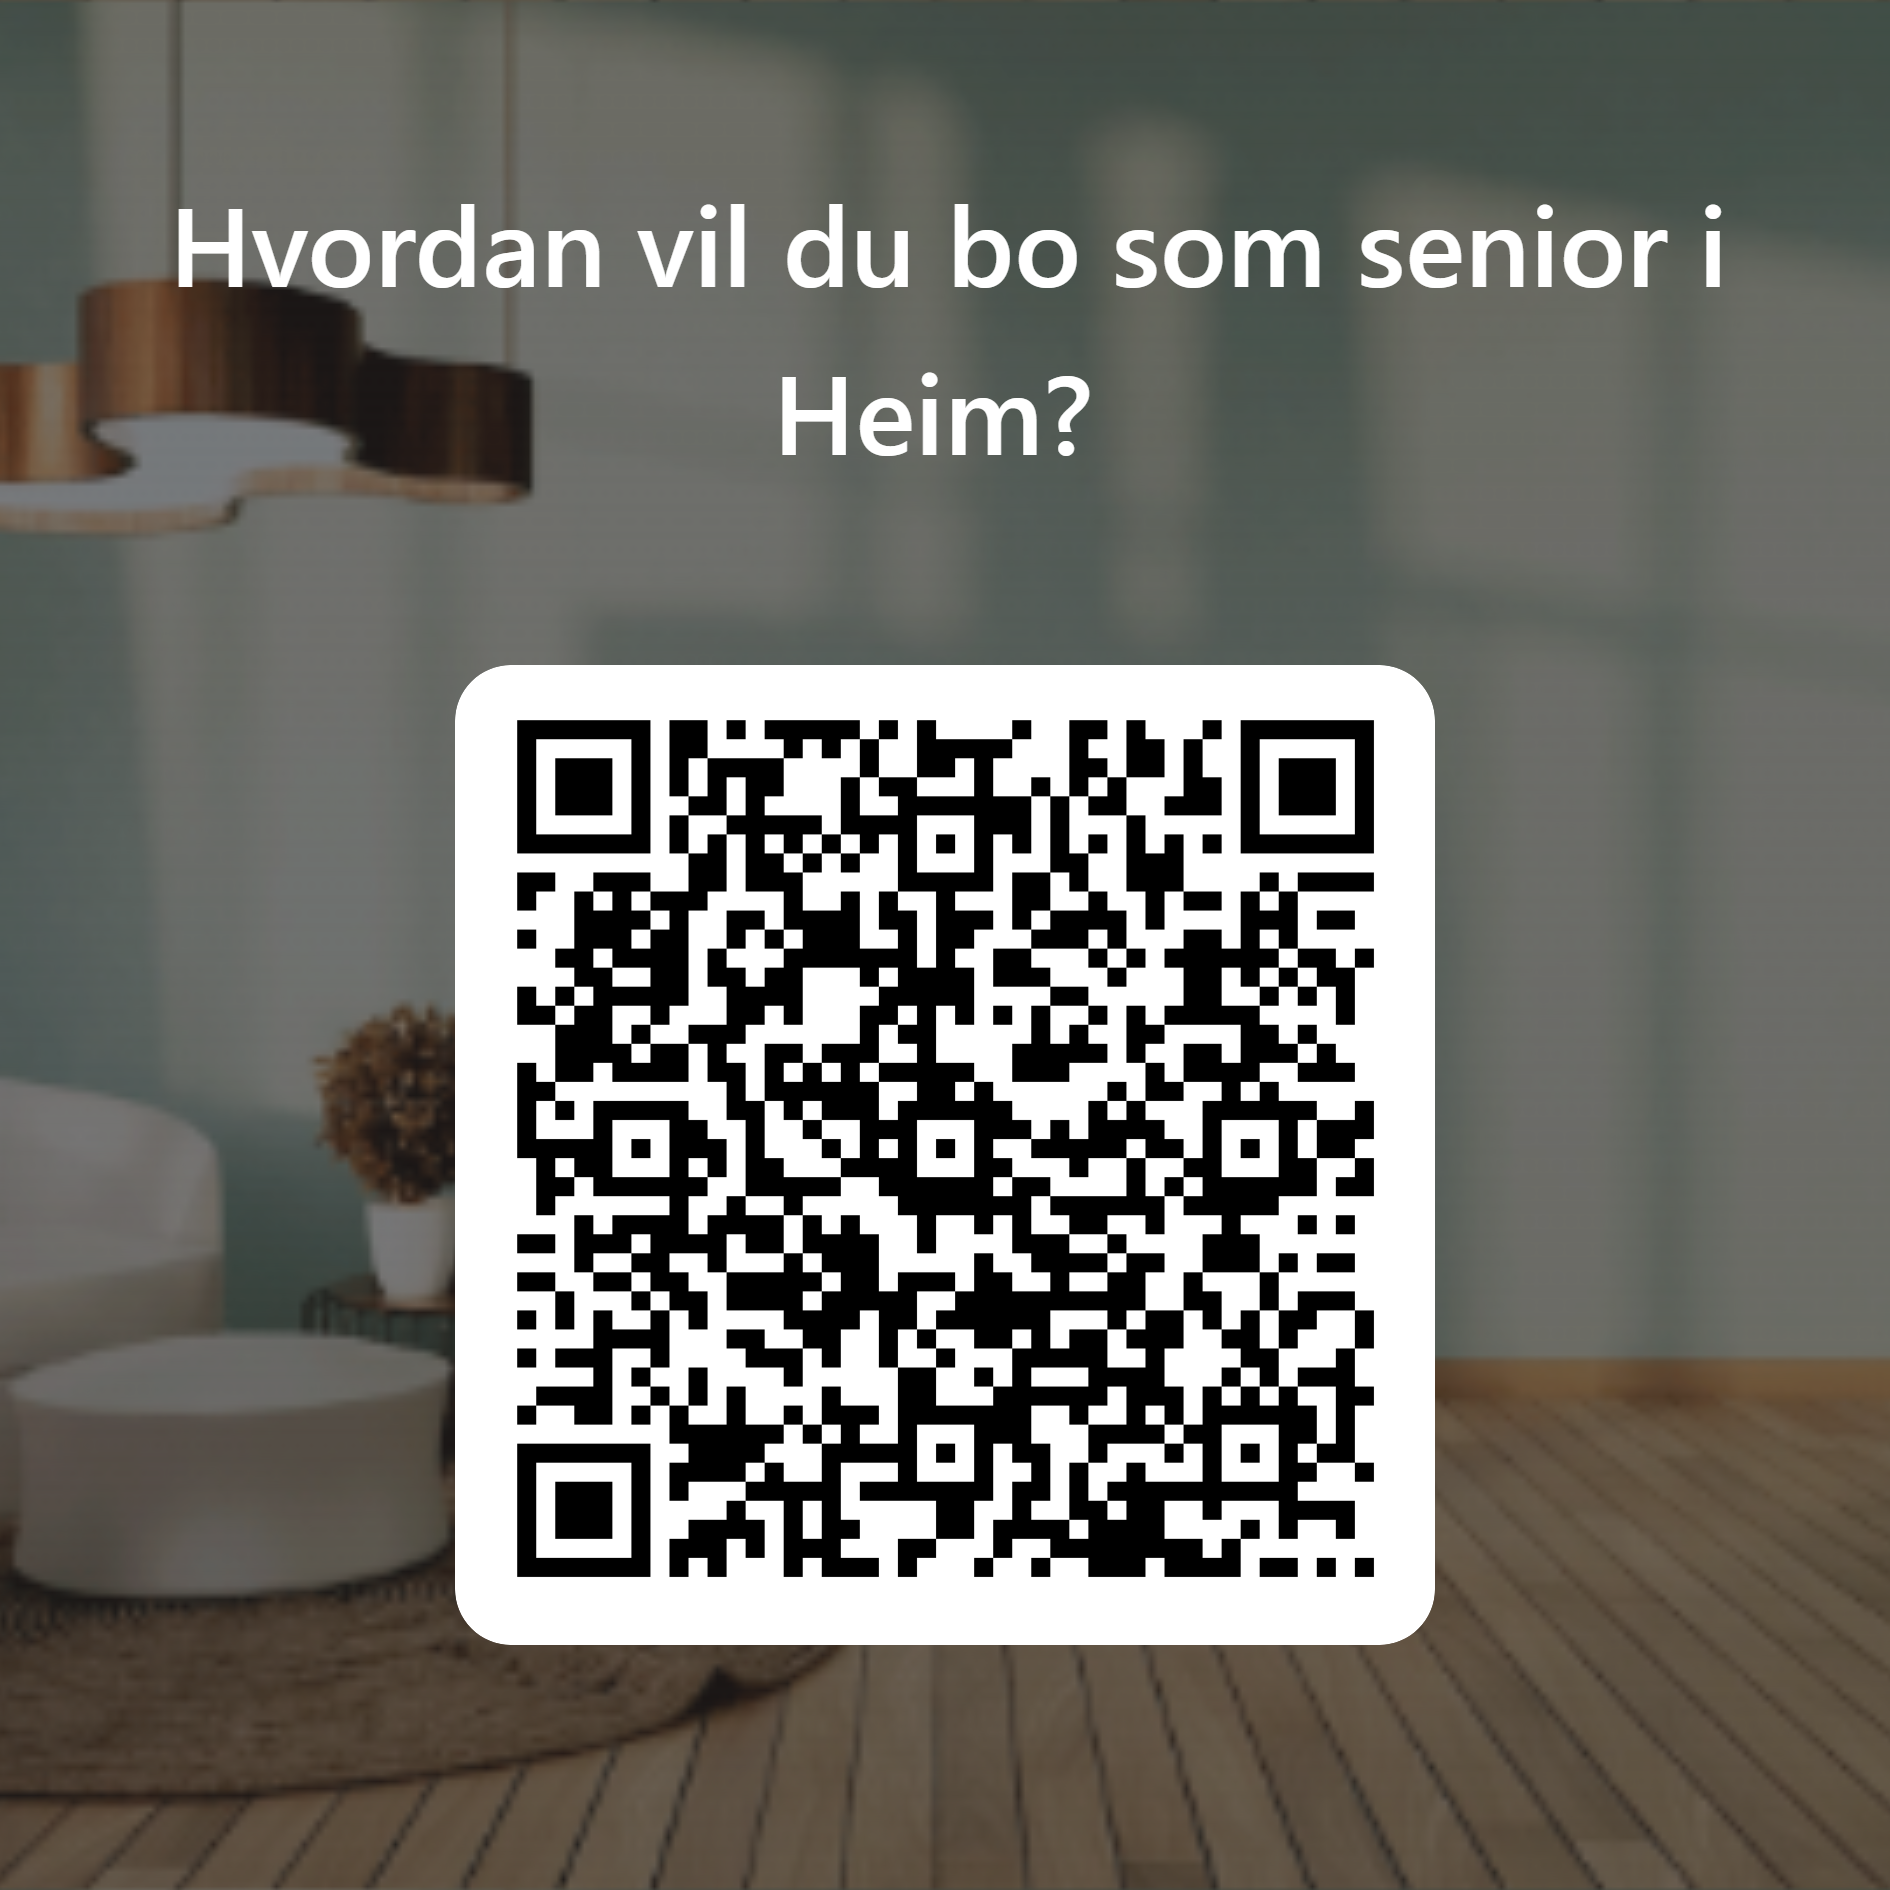 Figur: QR-kode Hvordan vil du bo som senior i Heim?